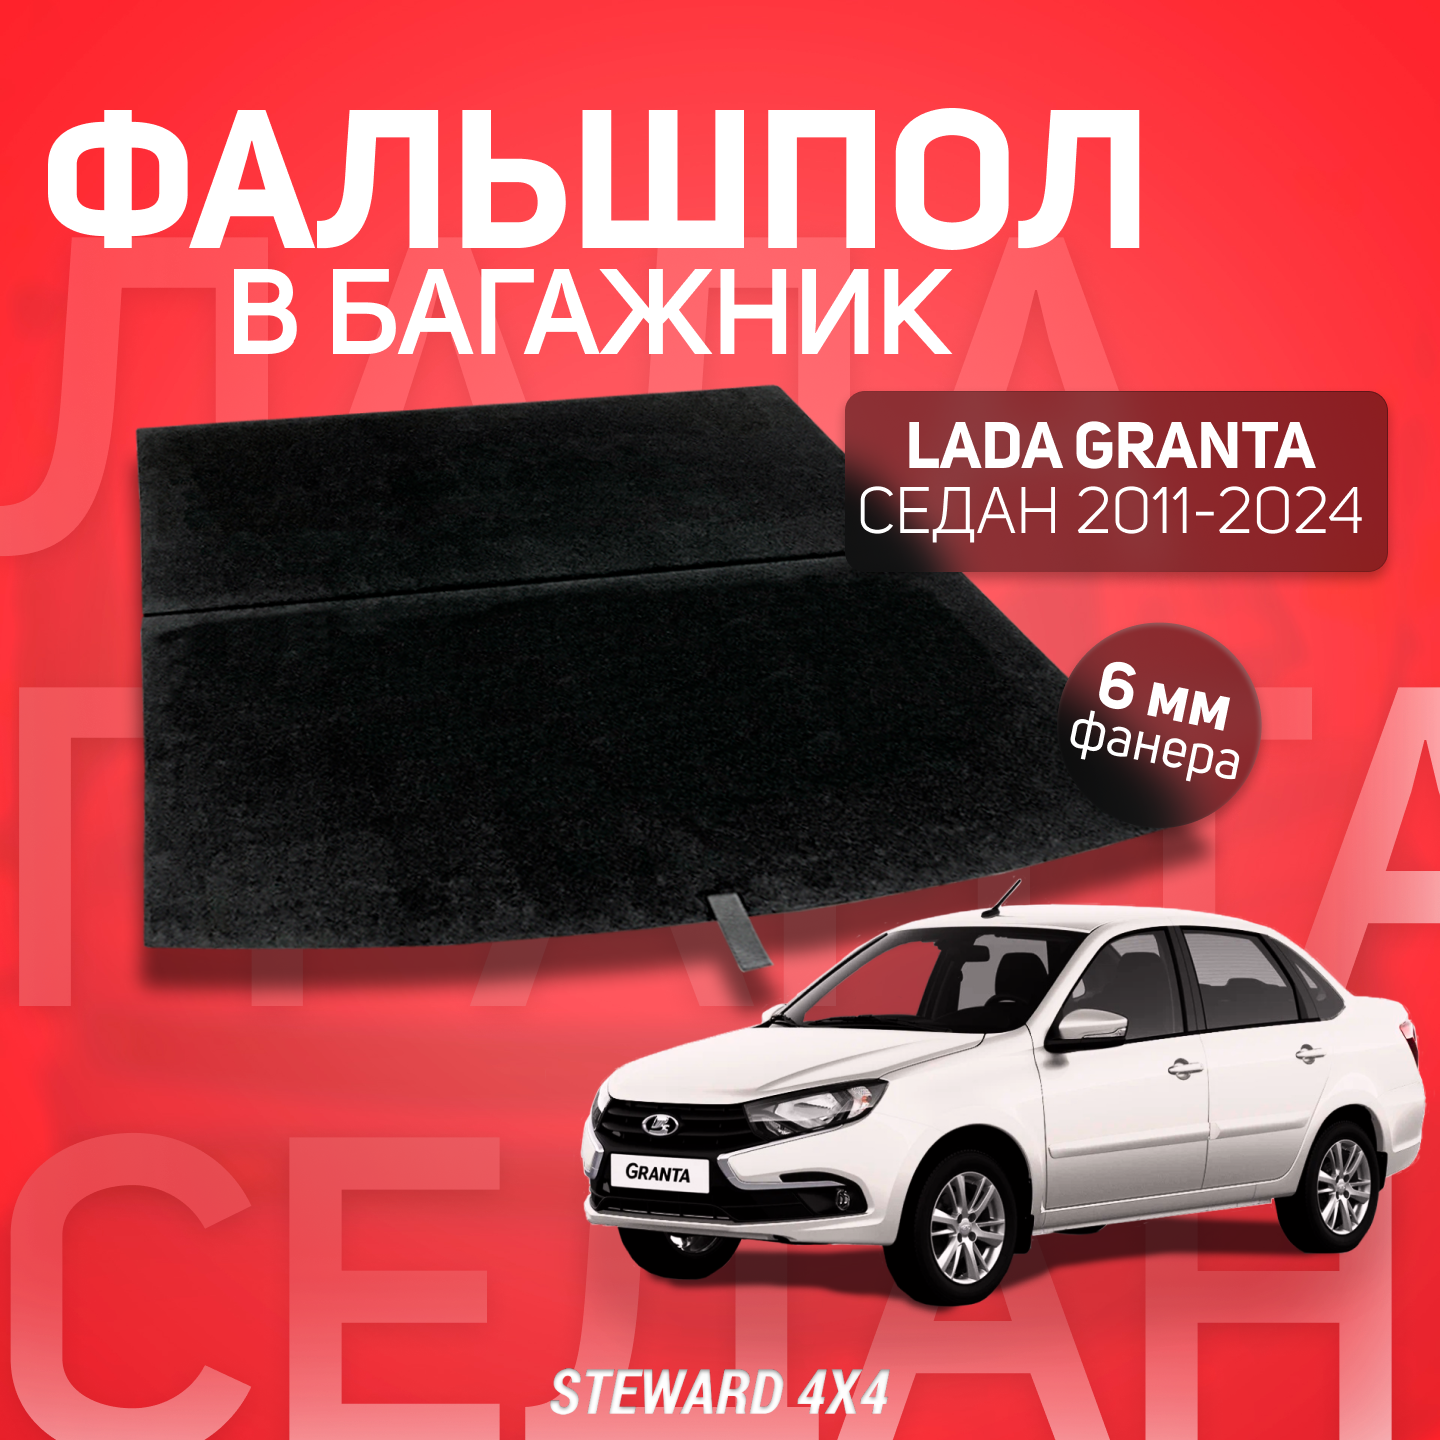 STEWARD 4Х4/ Фальшпол в багажник LADA Granta Седан (Лада Гранта) (2011-2024)